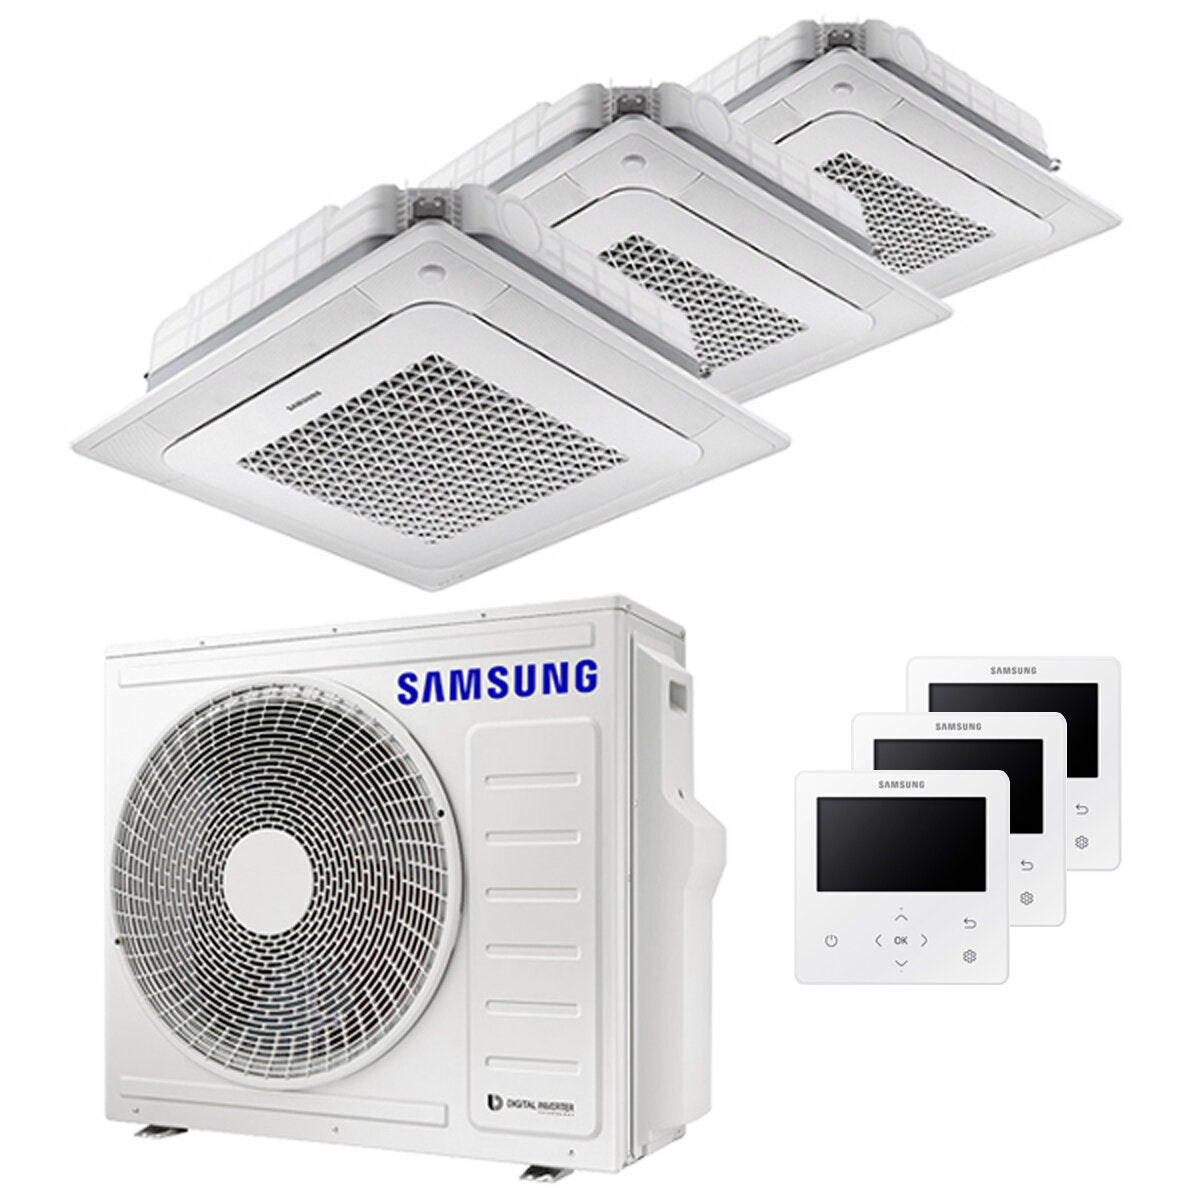 Samsung Air conditioner Windfree 4-way trial split 7000 + 12000 + 12000 BTU inverter A ++ outdoor unit 6,8 kW